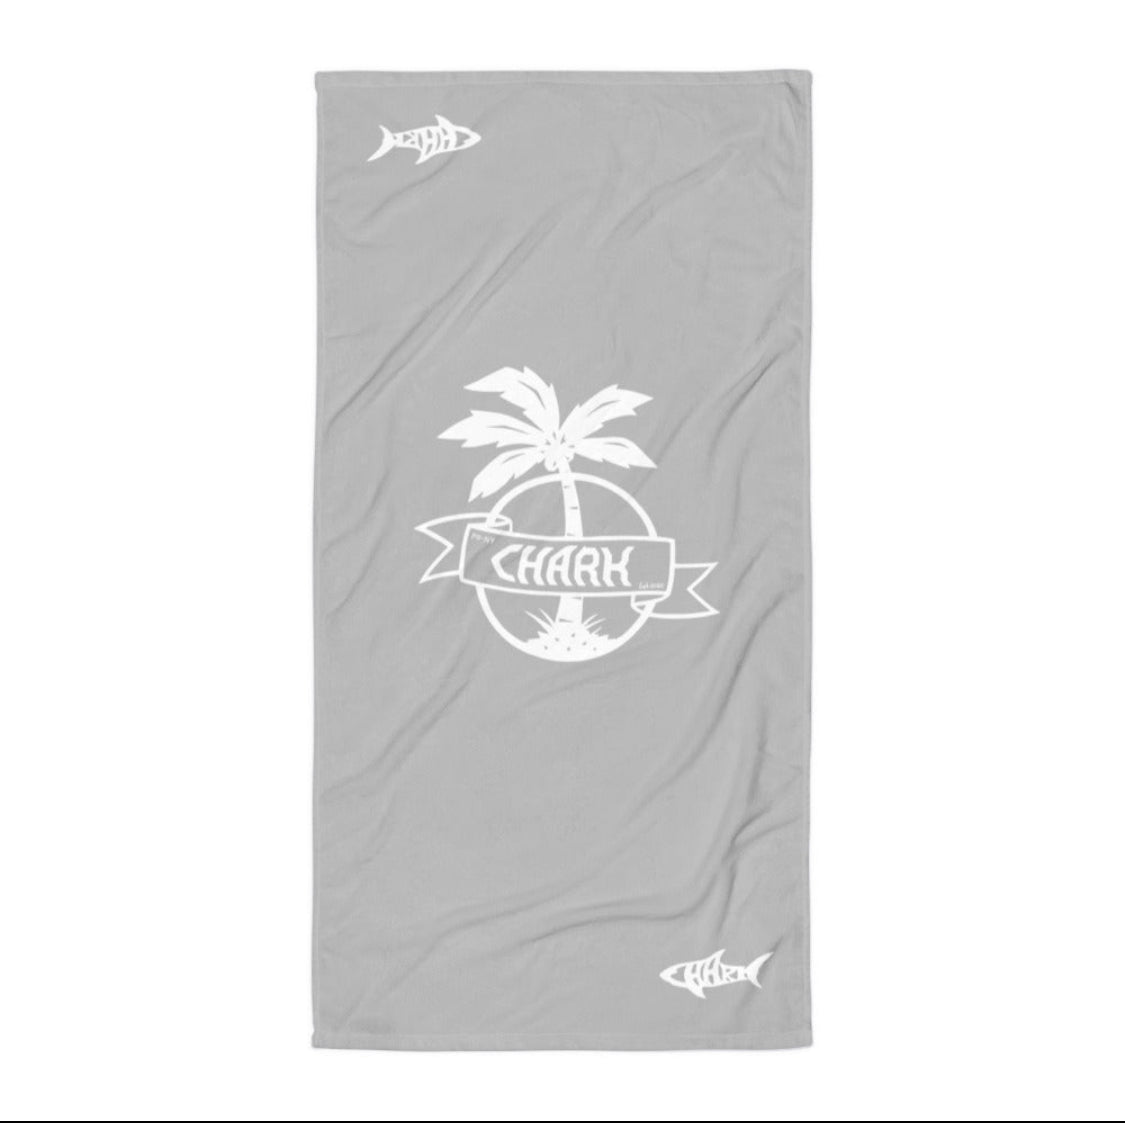 C. CARD GAME Towel